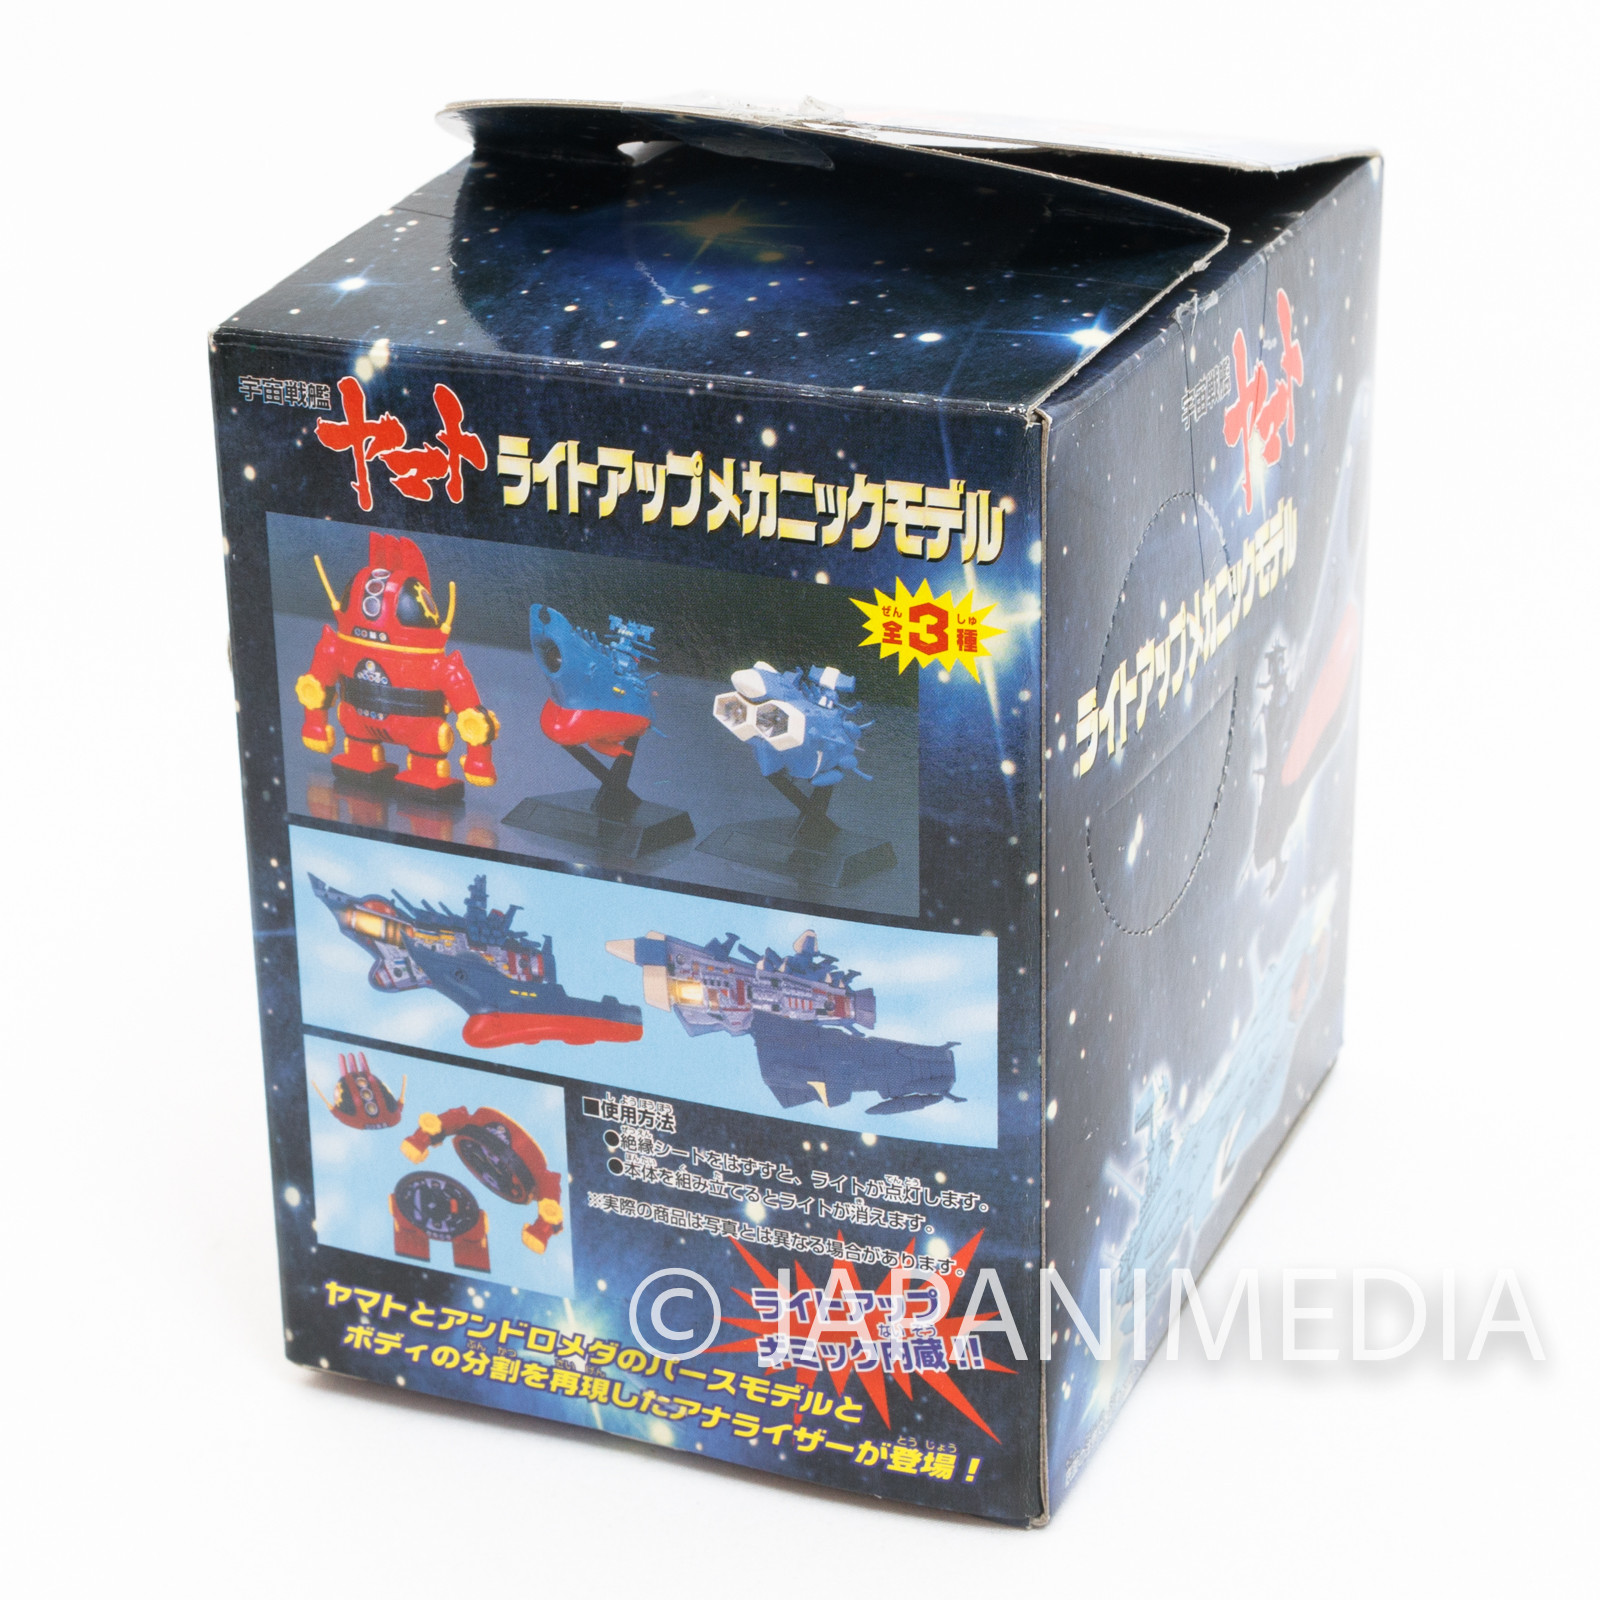 Space Battleship YAMATO Mechanical Model Figure Banpresto